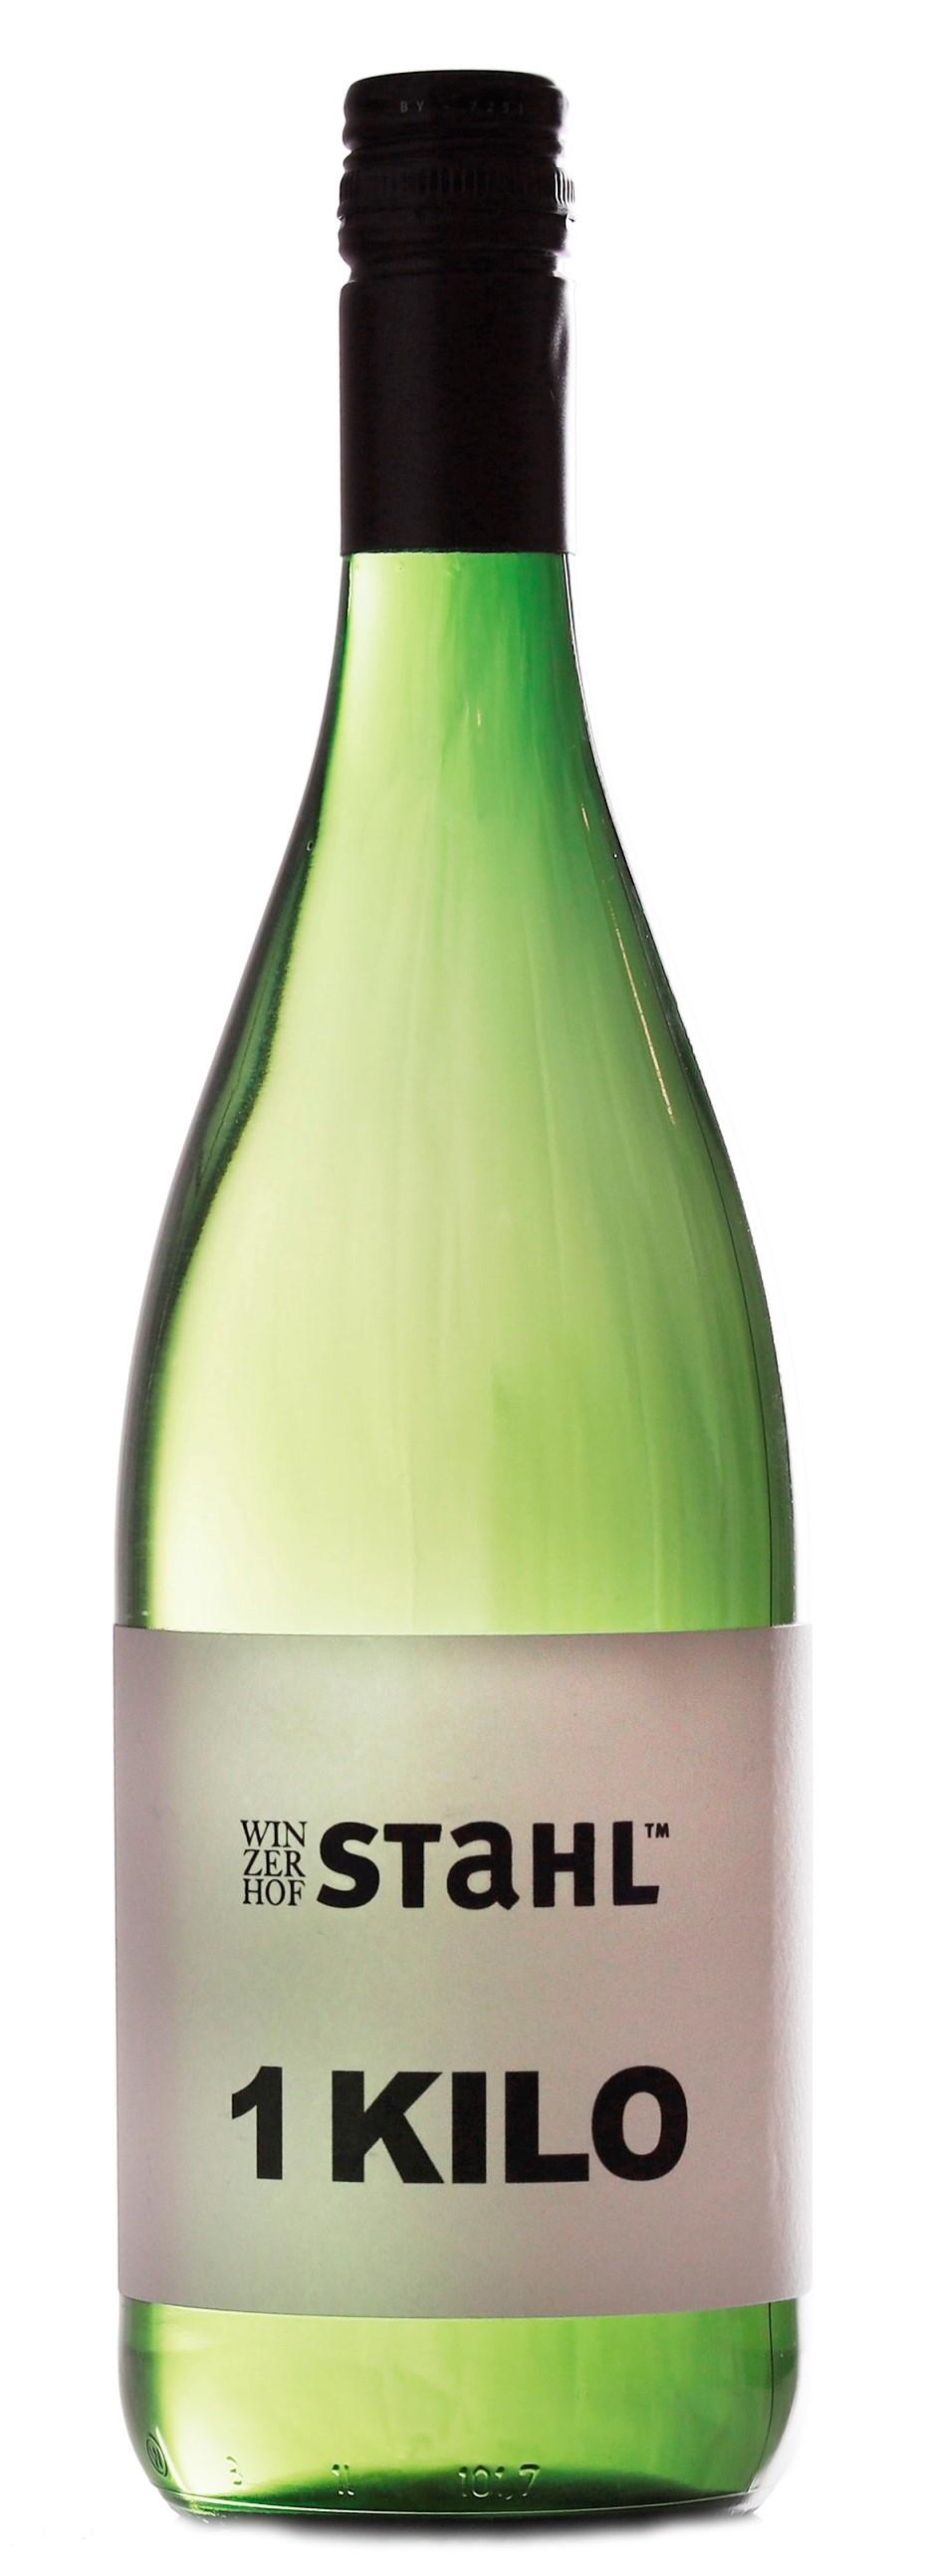 2021 Ein Kilo Stahl - Silvaner Qualitätswein